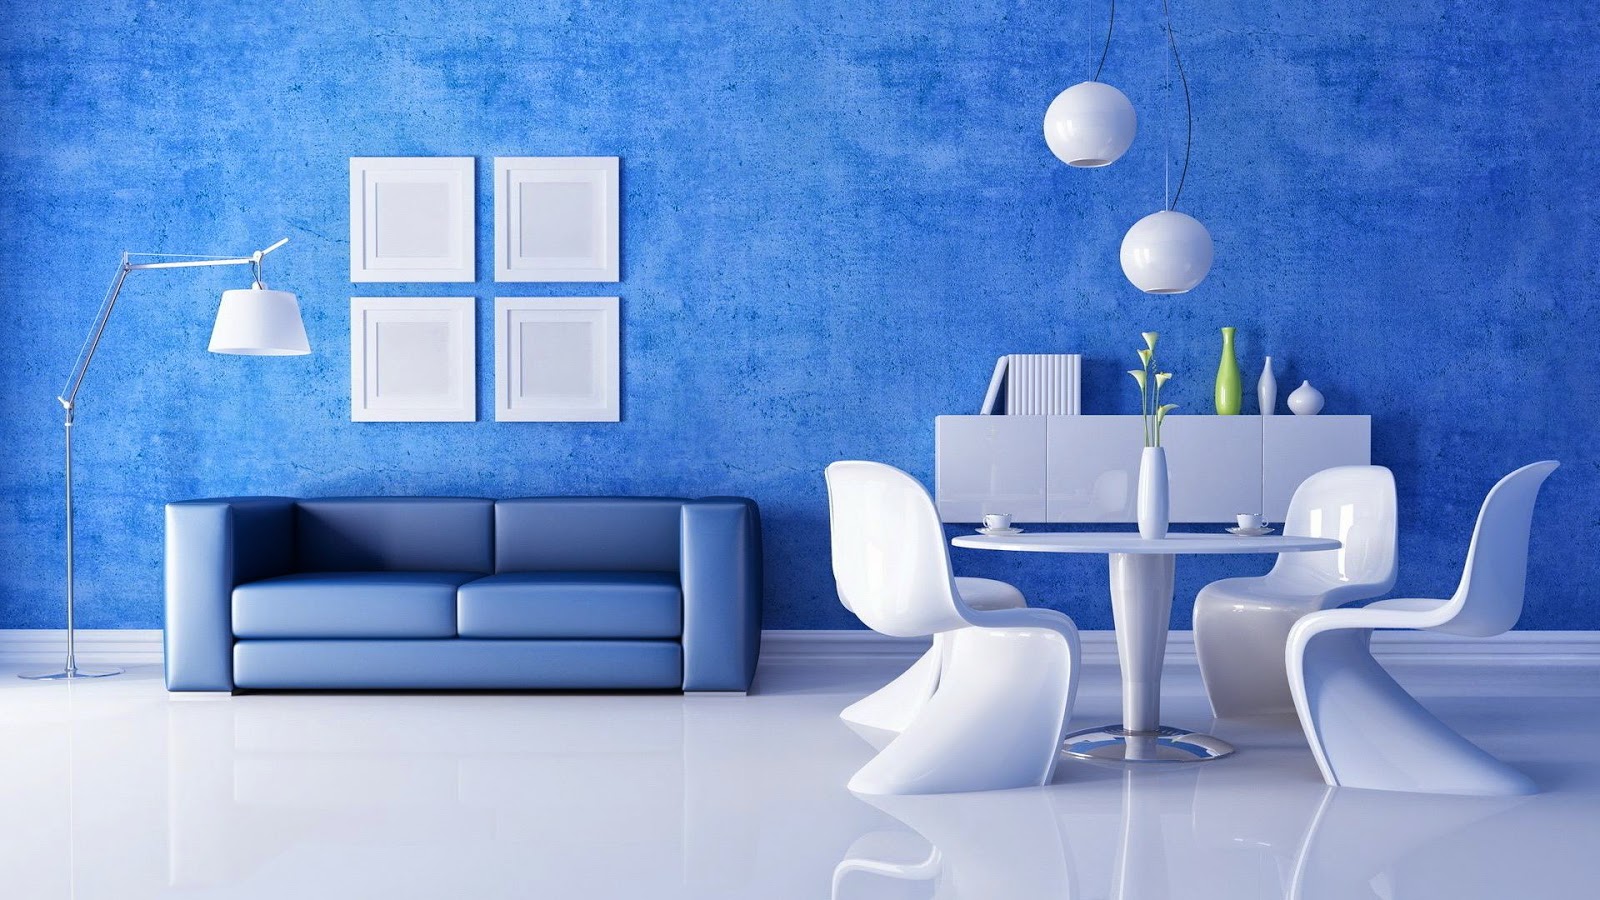 tapete dinding kamar tidur romantis,blau,wohnzimmer,zimmer,produkt,innenarchitektur